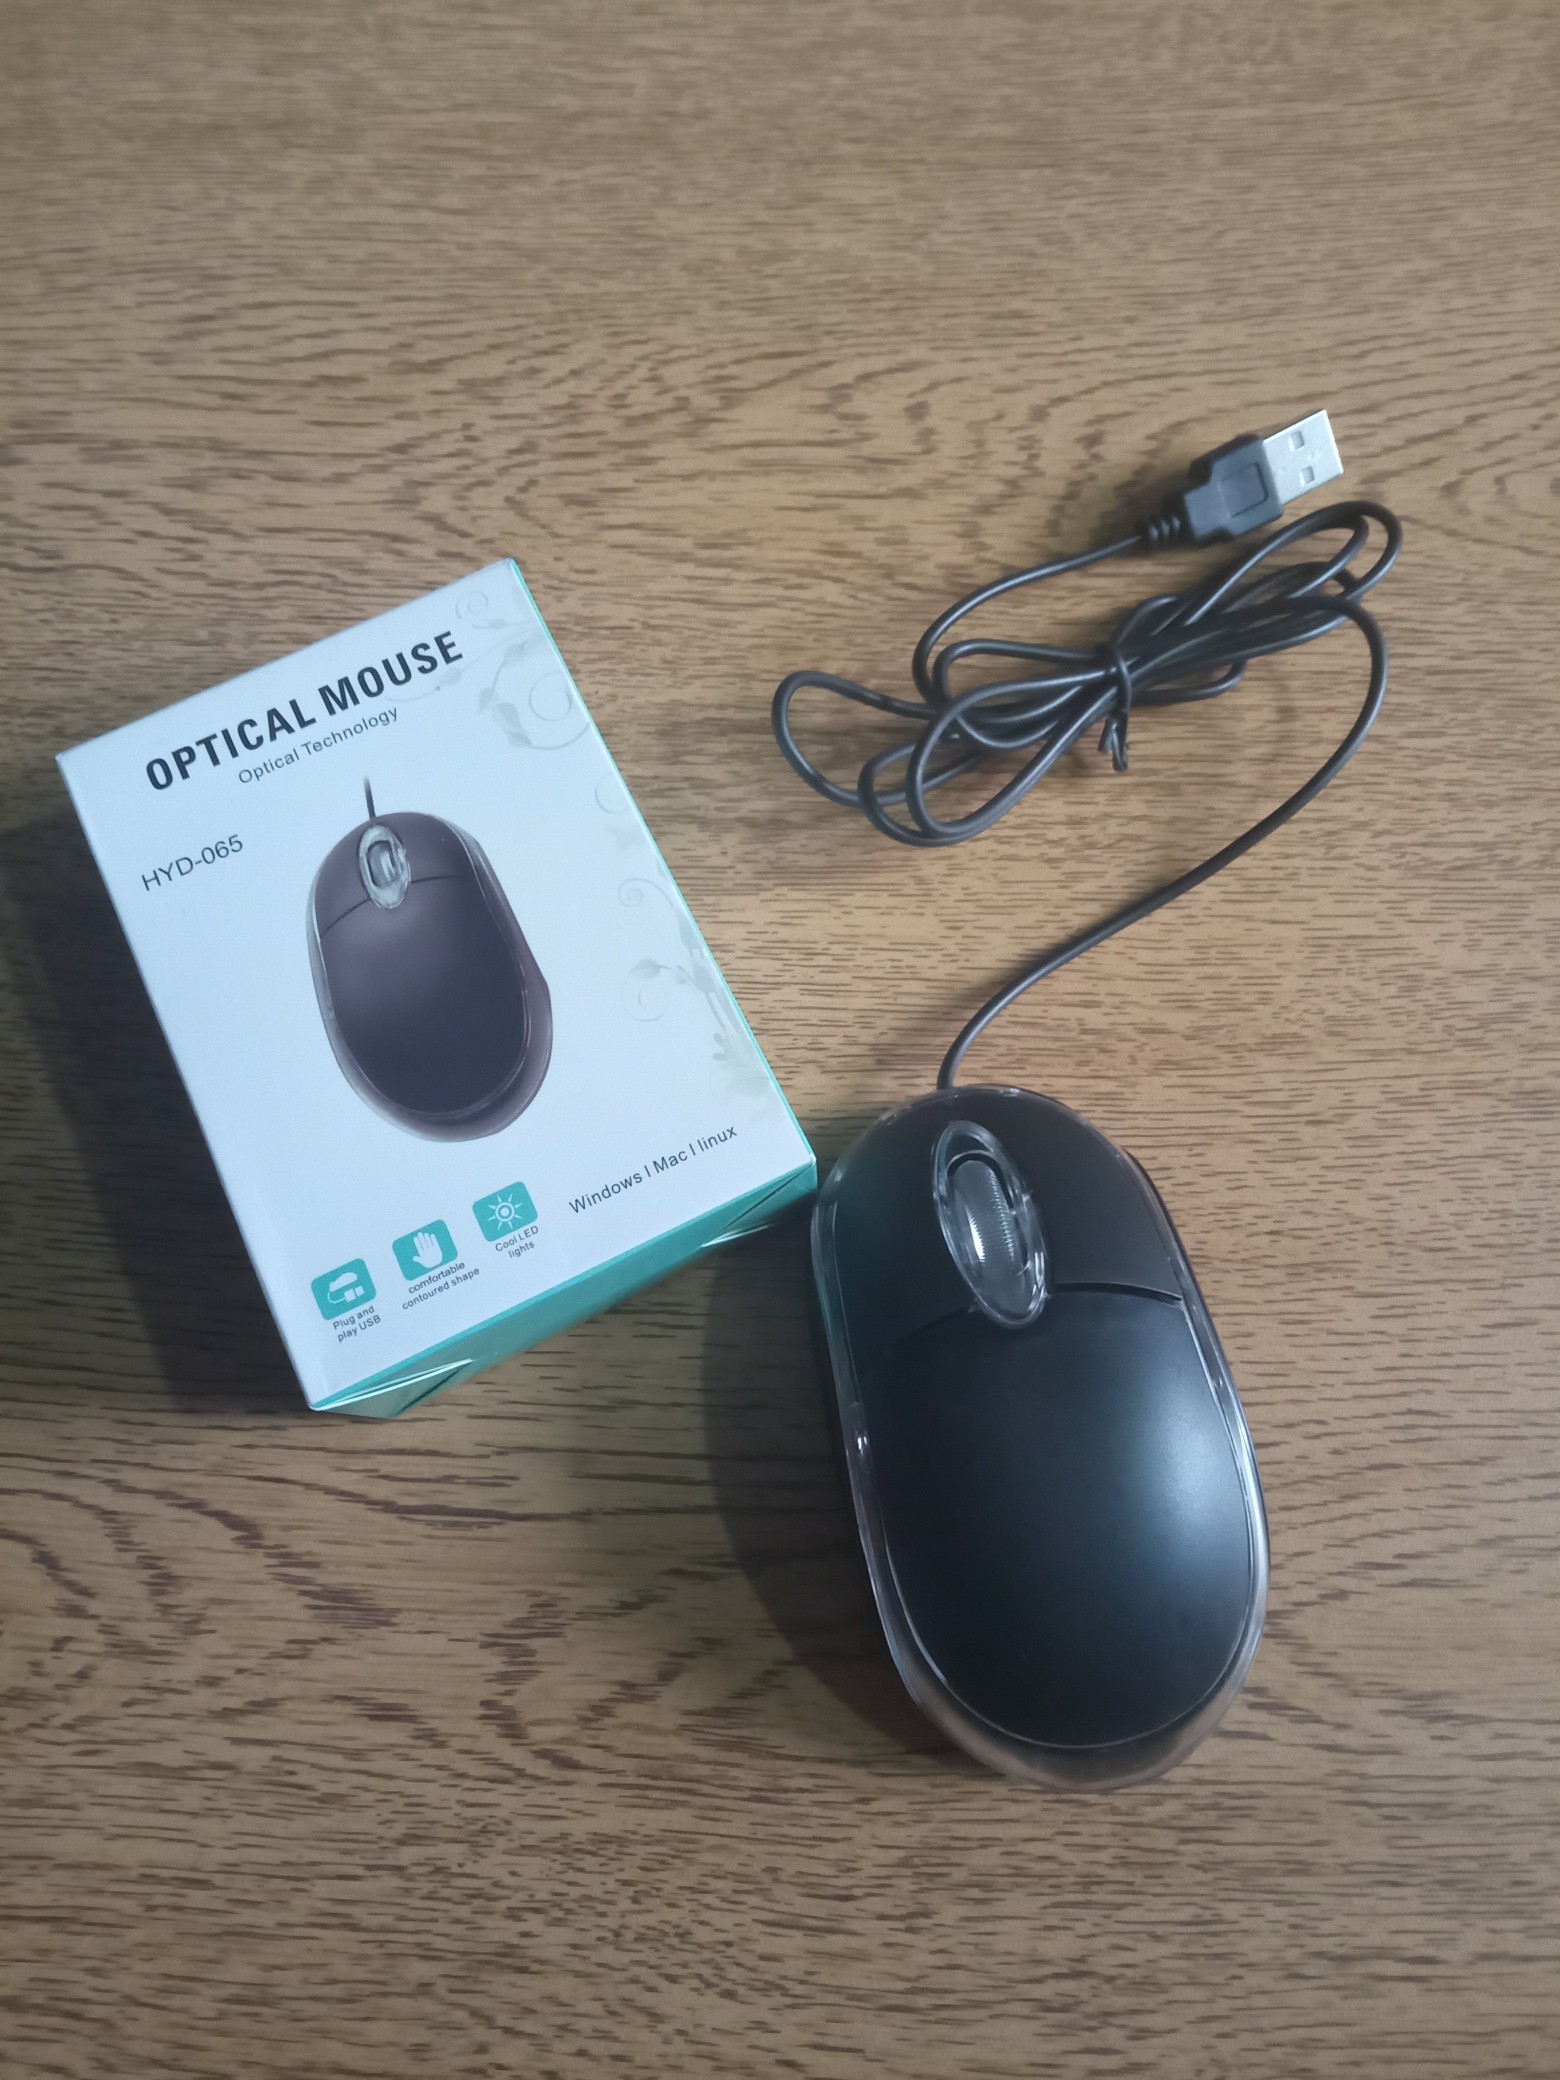 accesorios para electronica - Mouse Óptico